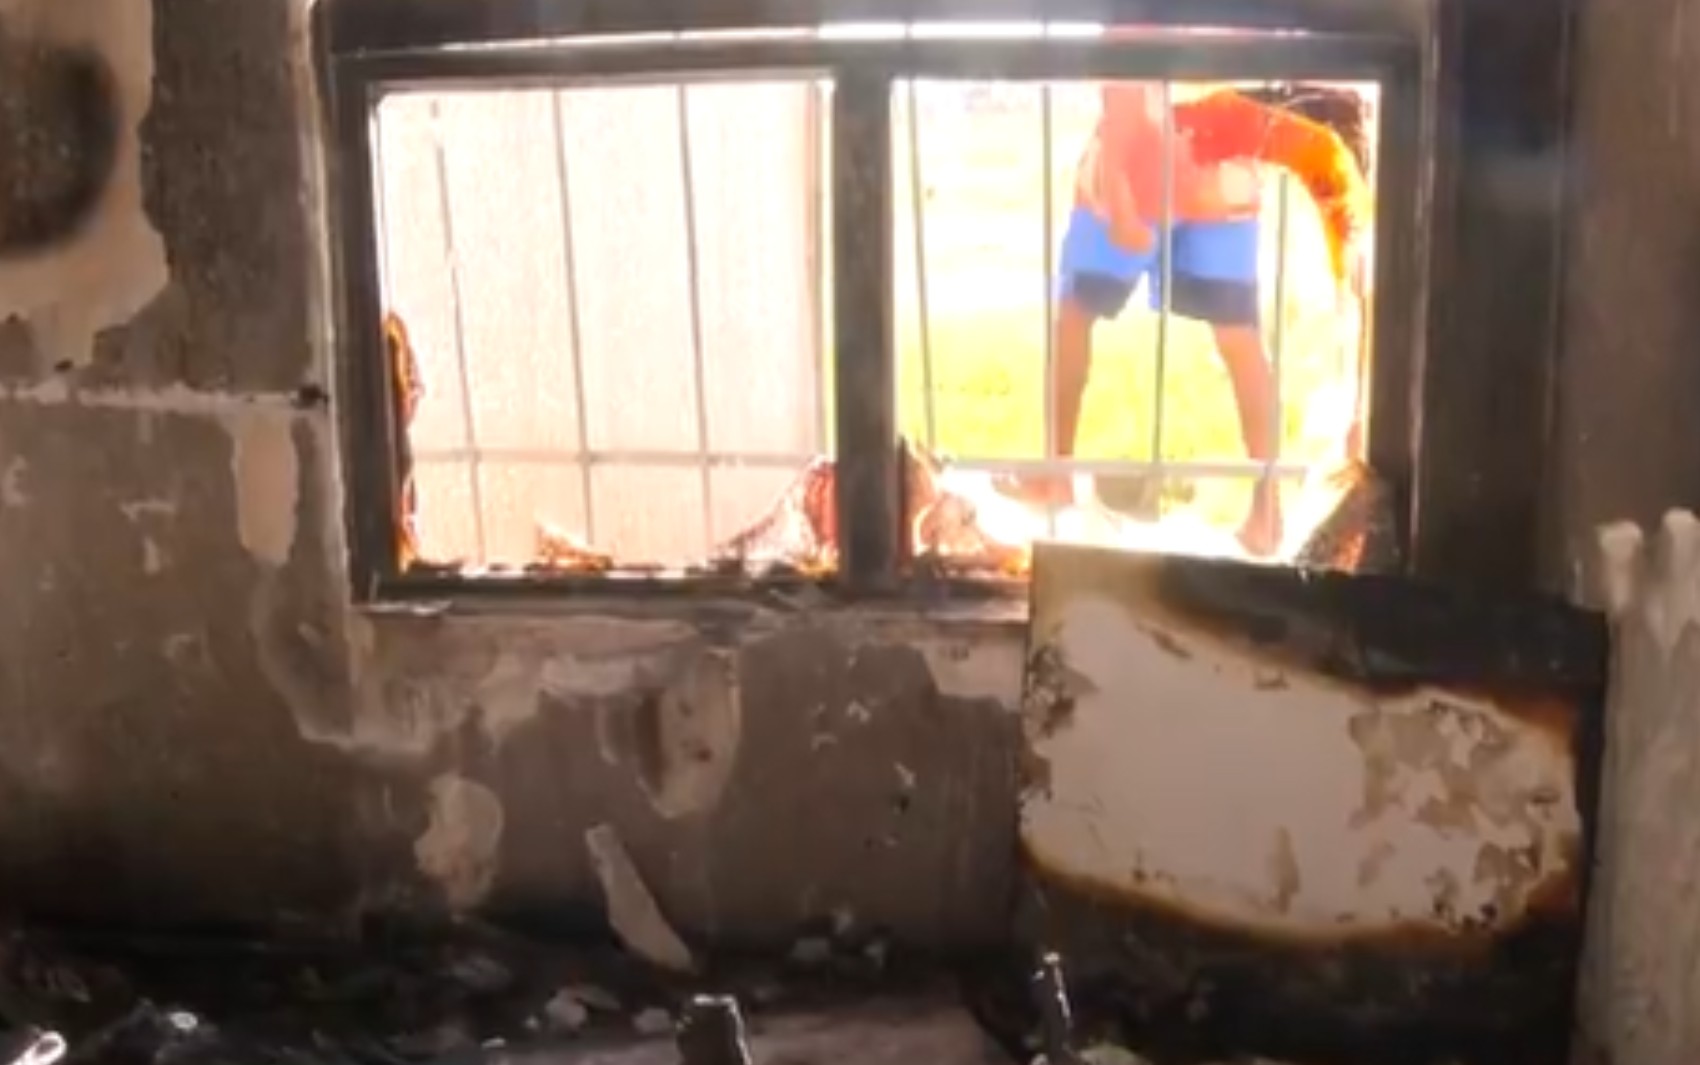 
Adolescente que teve 80% do corpo queimado em incêndio na BA não saiu pela janela porque grades deram choque, dizem vizinhos